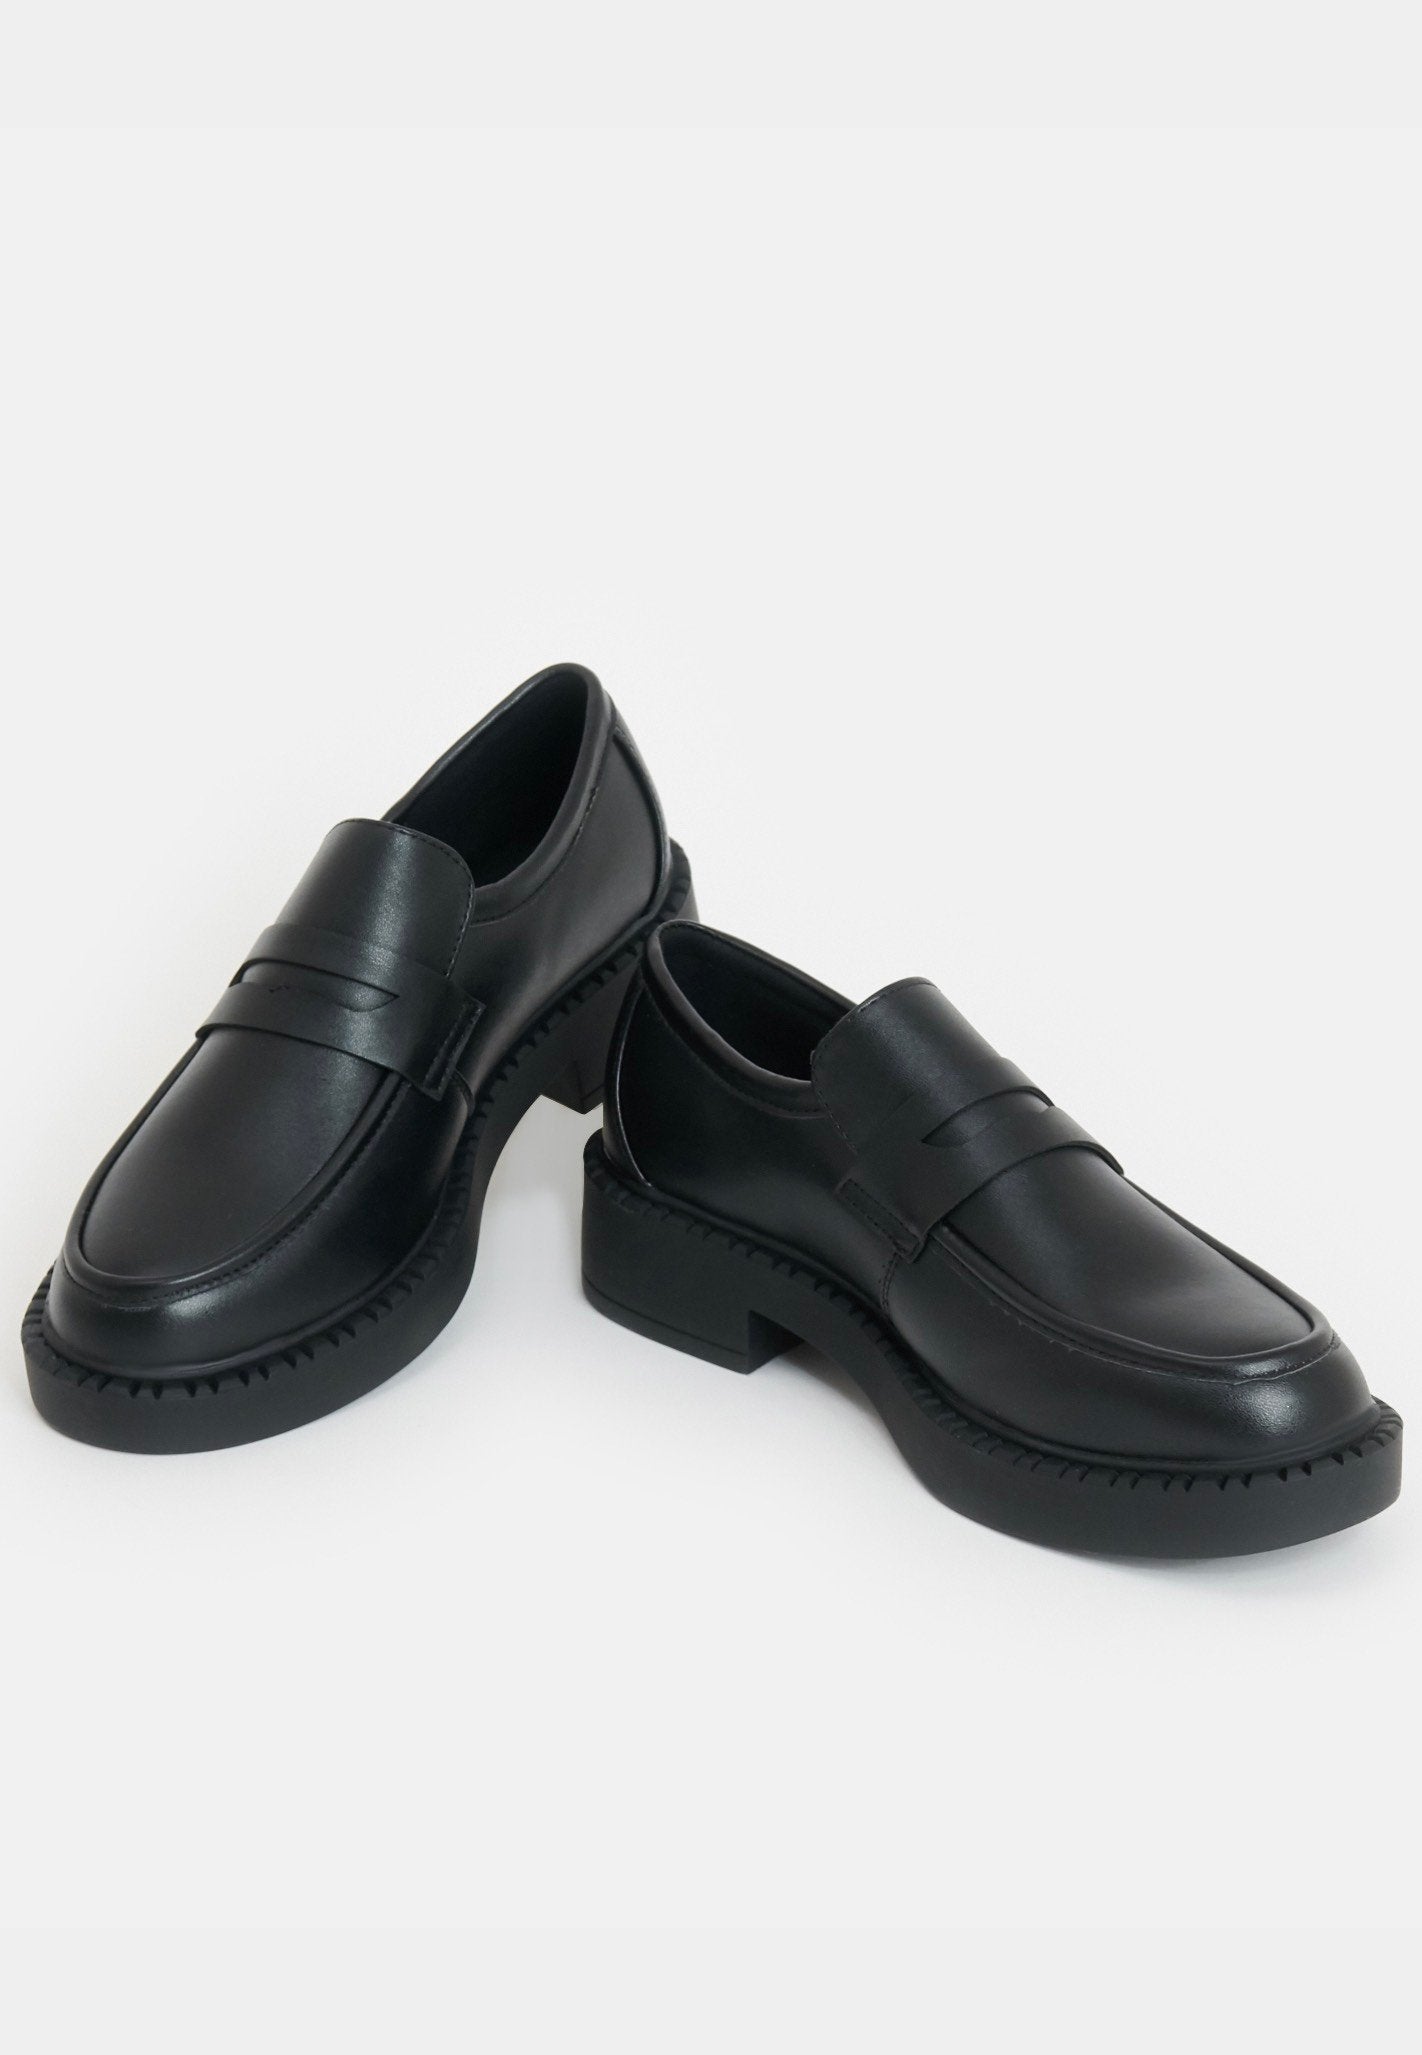 Koi Footwear - Dorado Black Tale Loafers Black - Girl Shoes